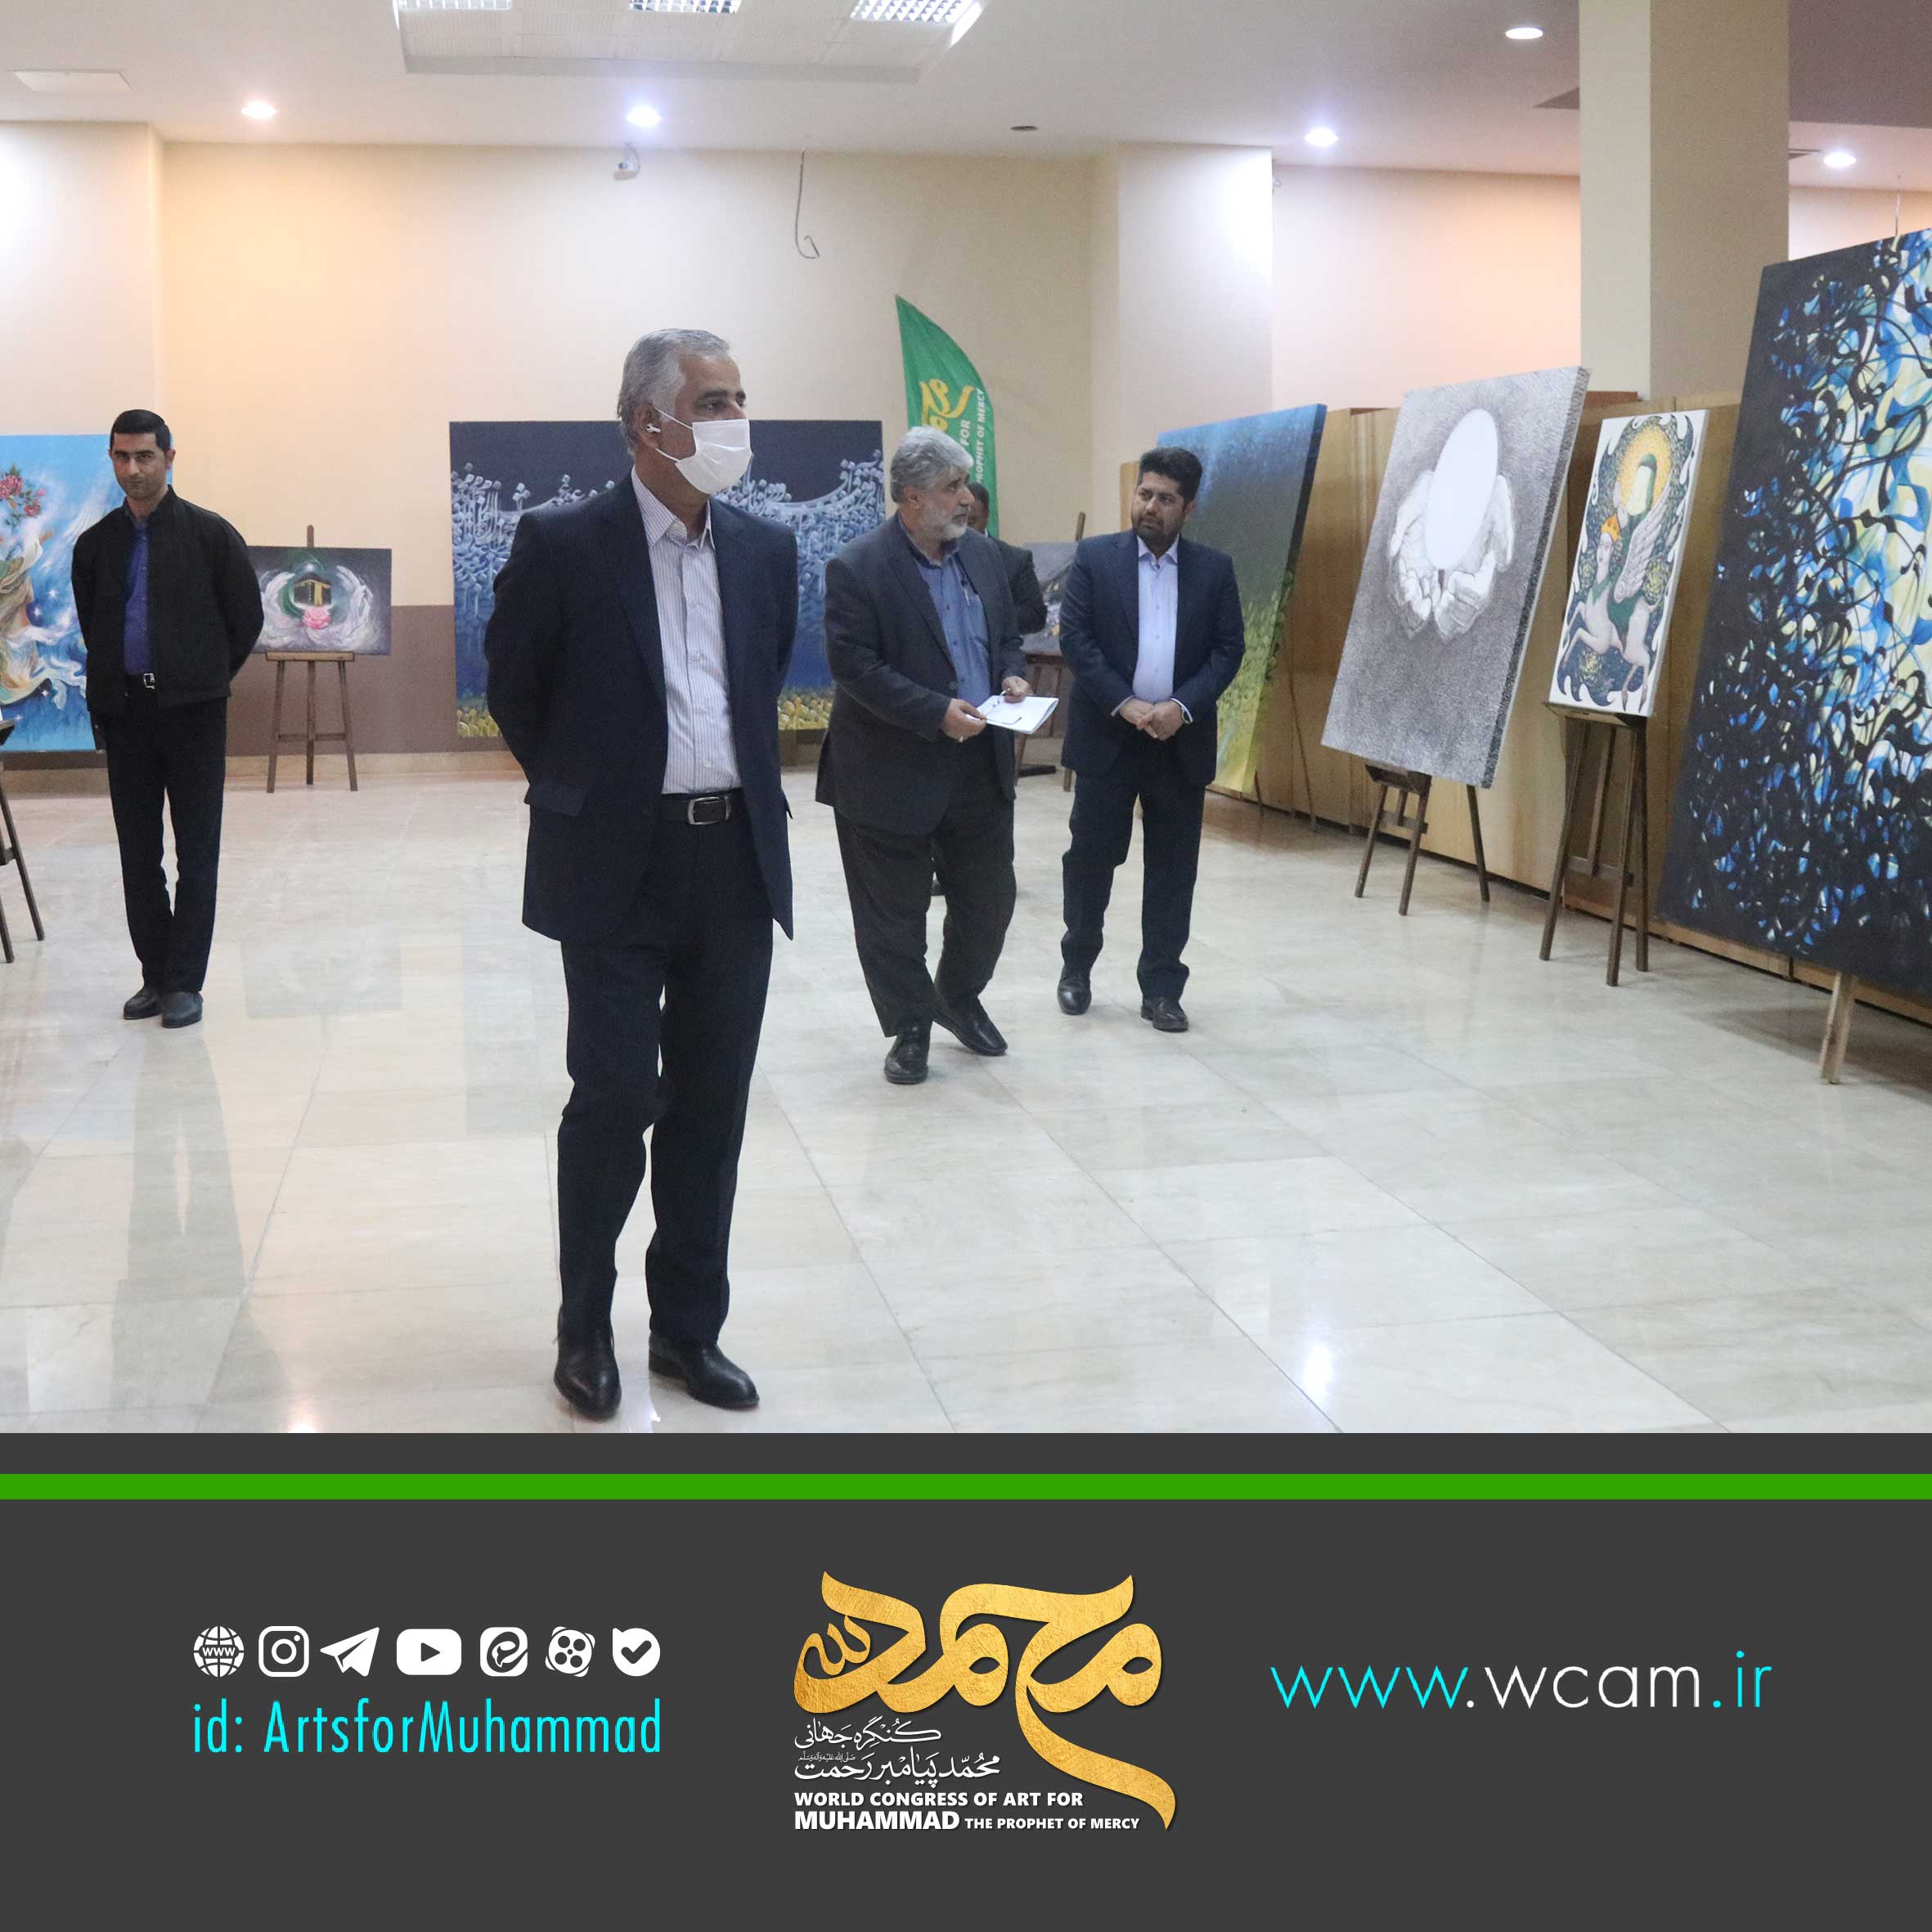 شورای اسلامی شهر شیراز میزبان چهارمین نمایشگاه آثارهنری کنگره جهانی مـحمد ﷺ